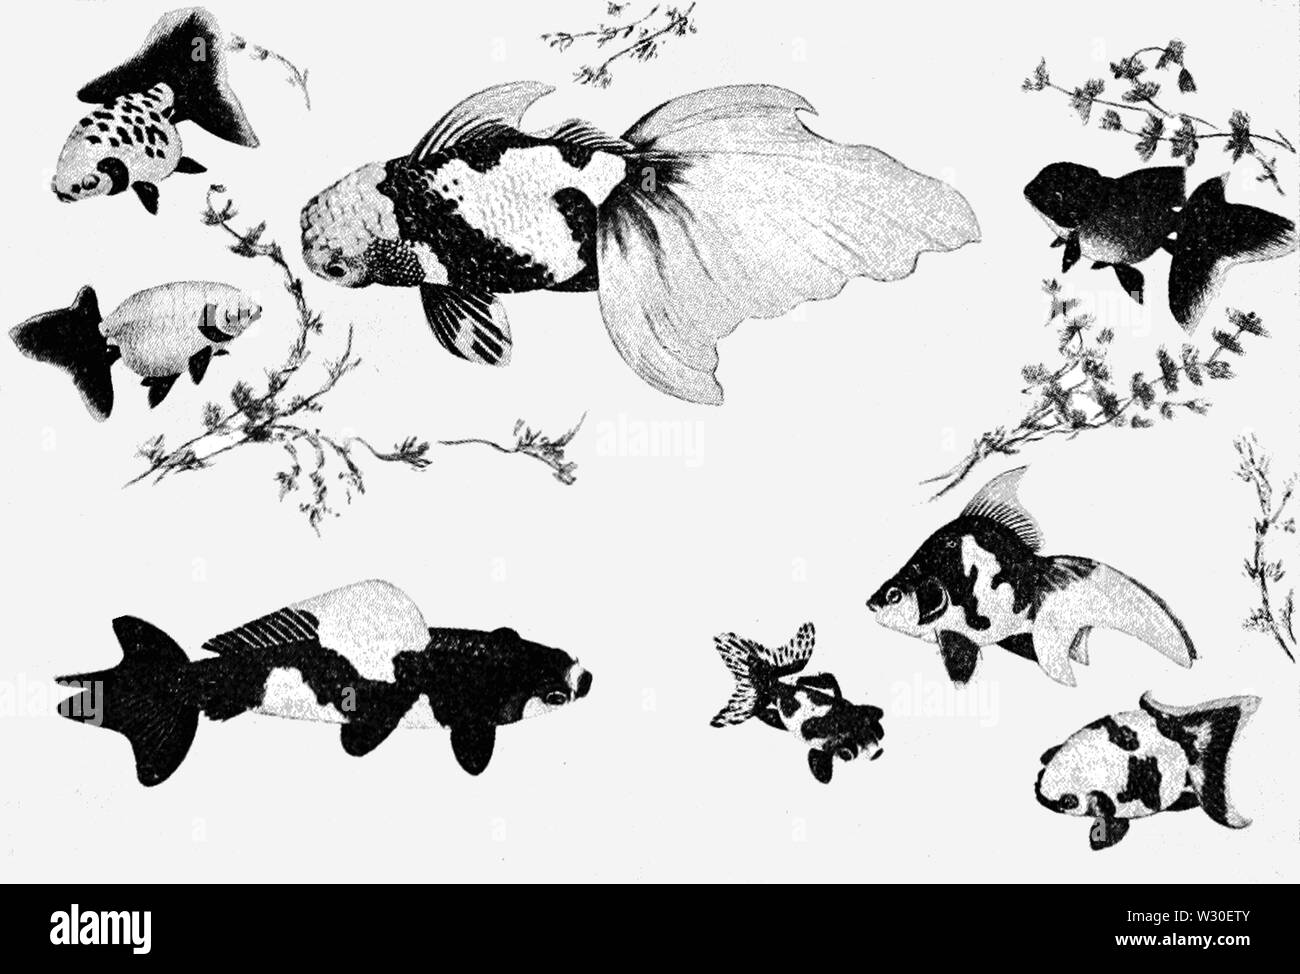 Pinturas japonesas Imágenes de stock en blanco y negro - Alamy